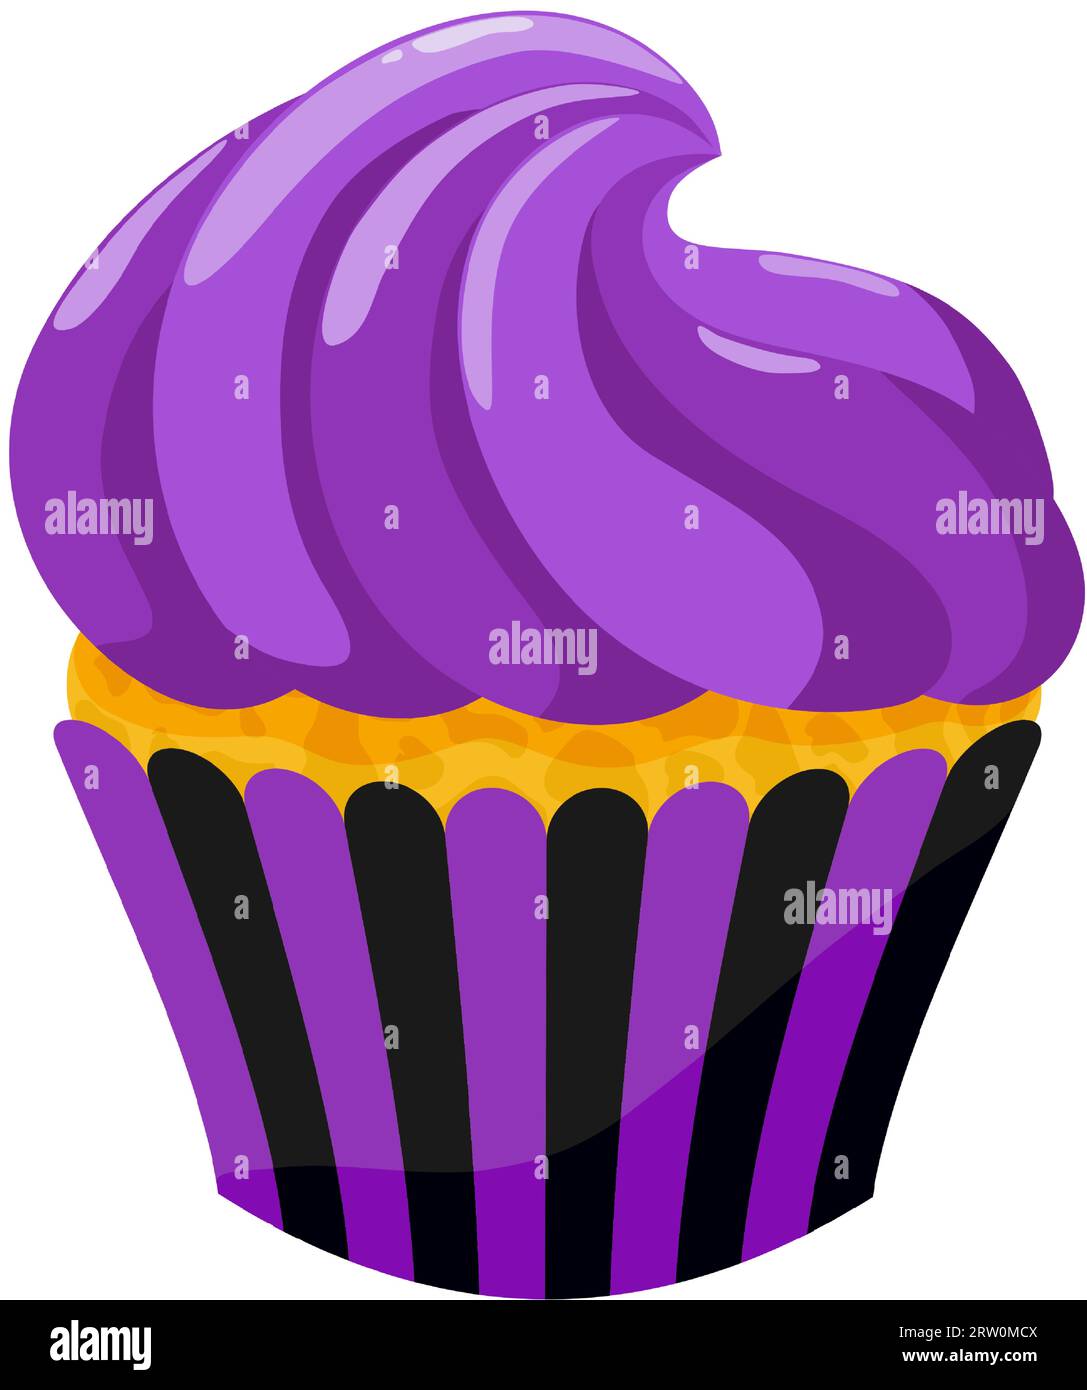 Violetter Blaubeer-Cupcake mit Creme. Süße Weihnachtsgebäck. Vektorillustration. Stock Vektor